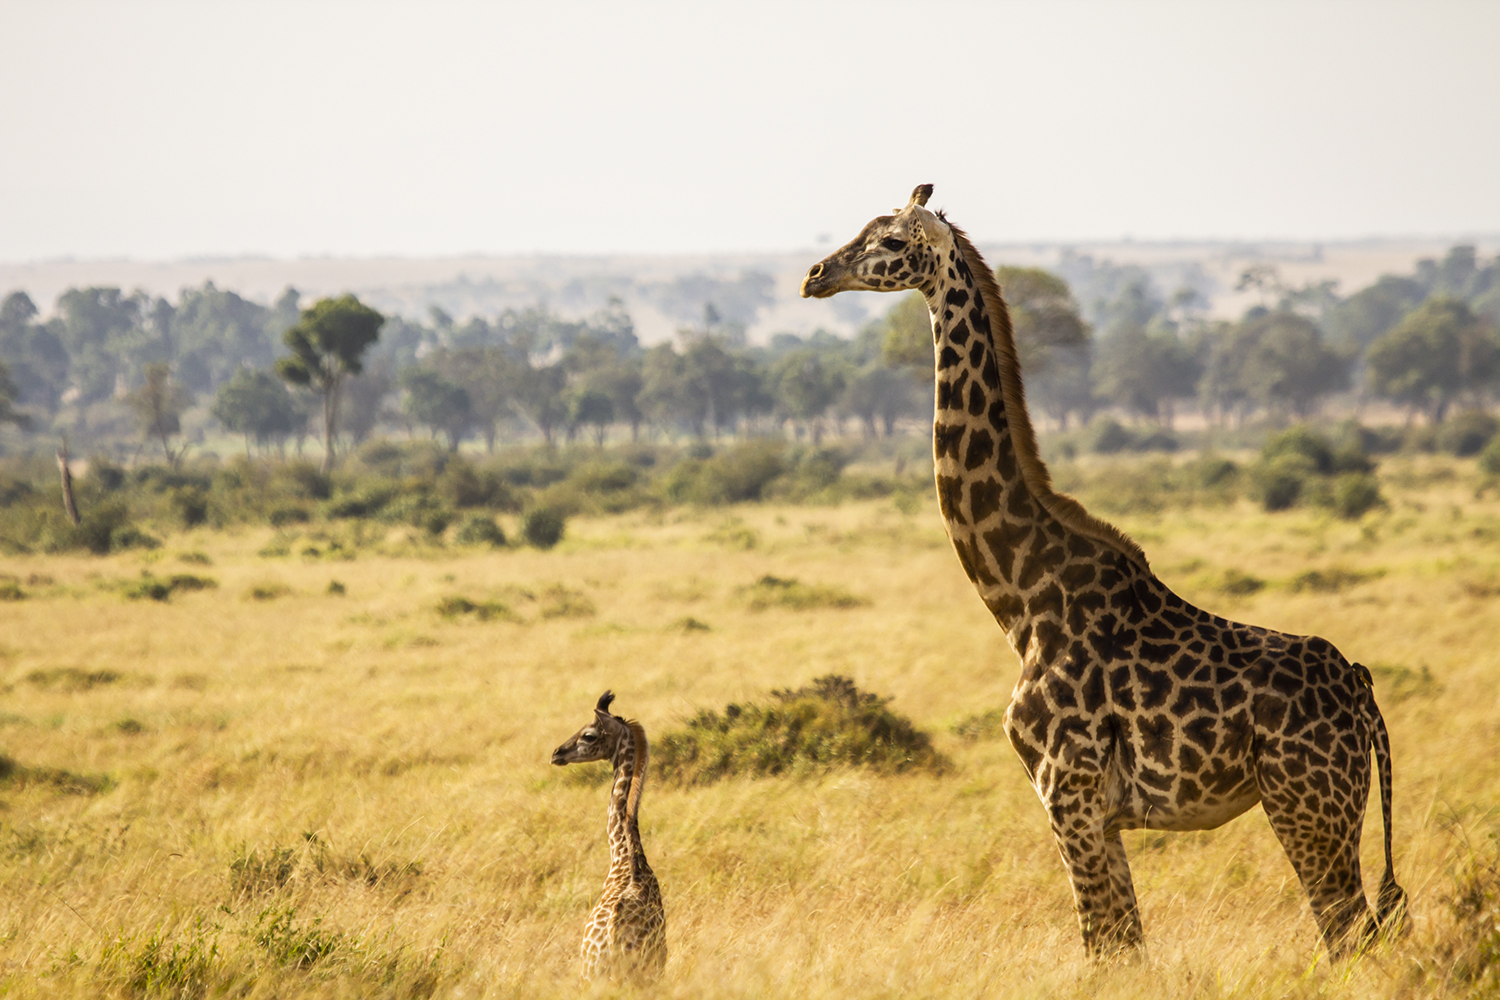 Giraffe baby in the maasai mara